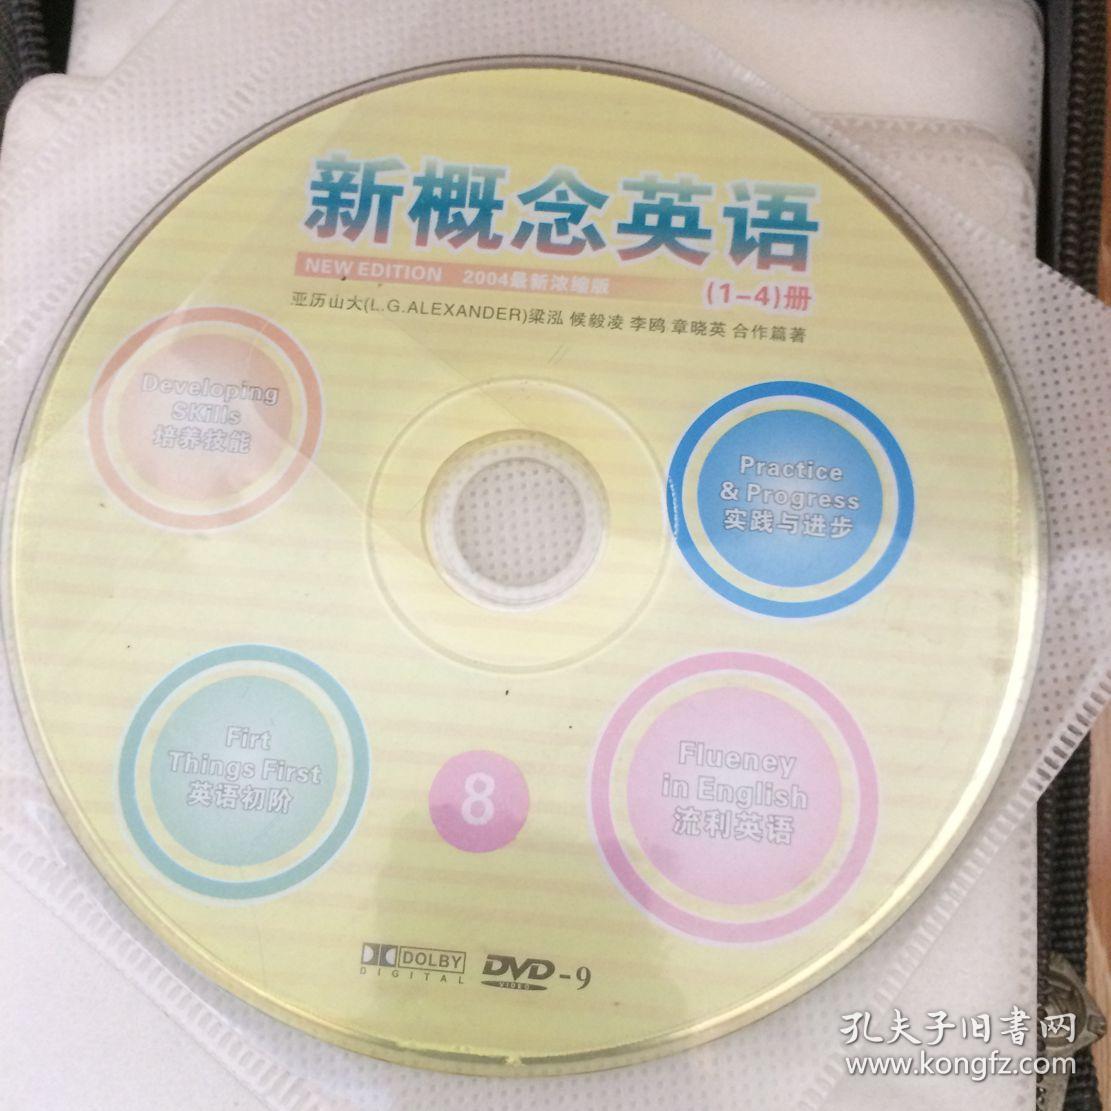 _如何将光盘内容转换成中文_安装光盘选择语言设置